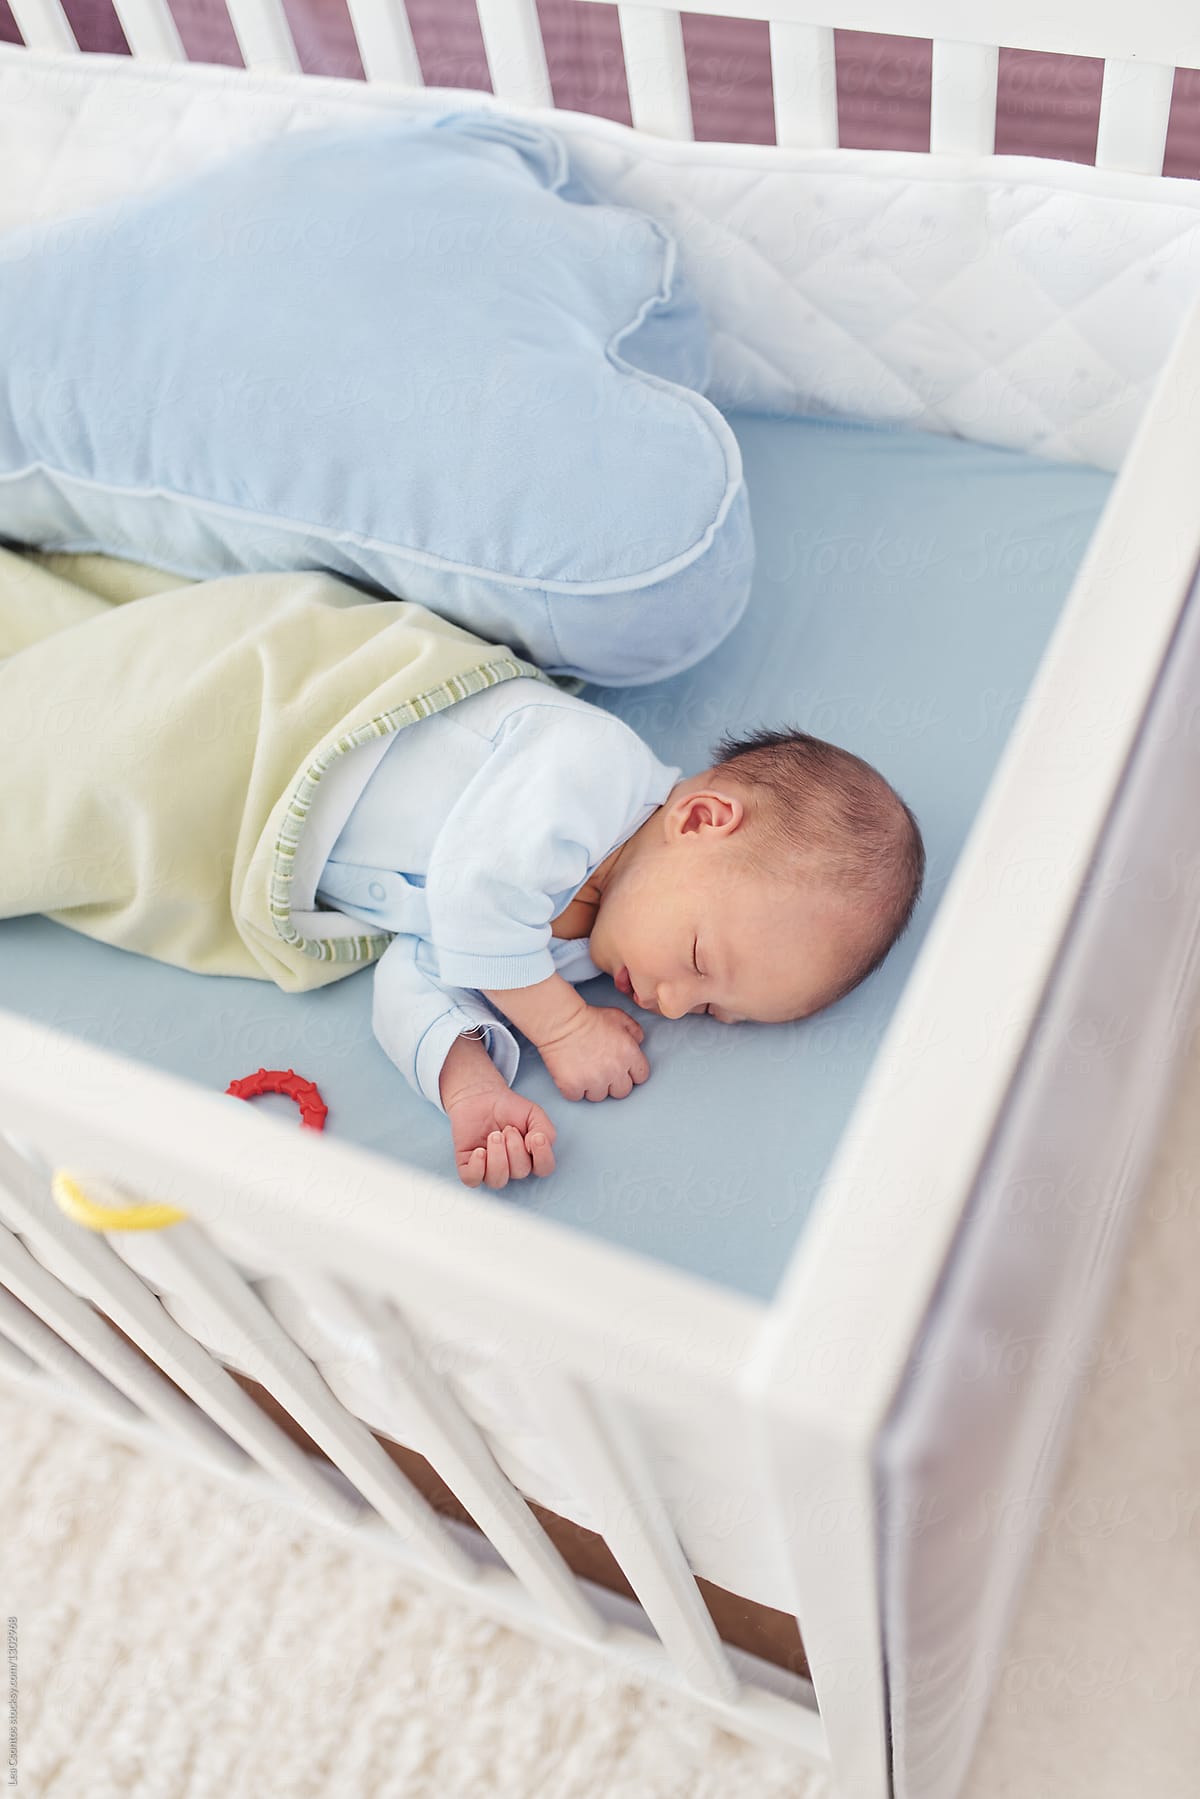 Newborn Baby Sleeping In A White Crib By Lea Csontos Stocksy United